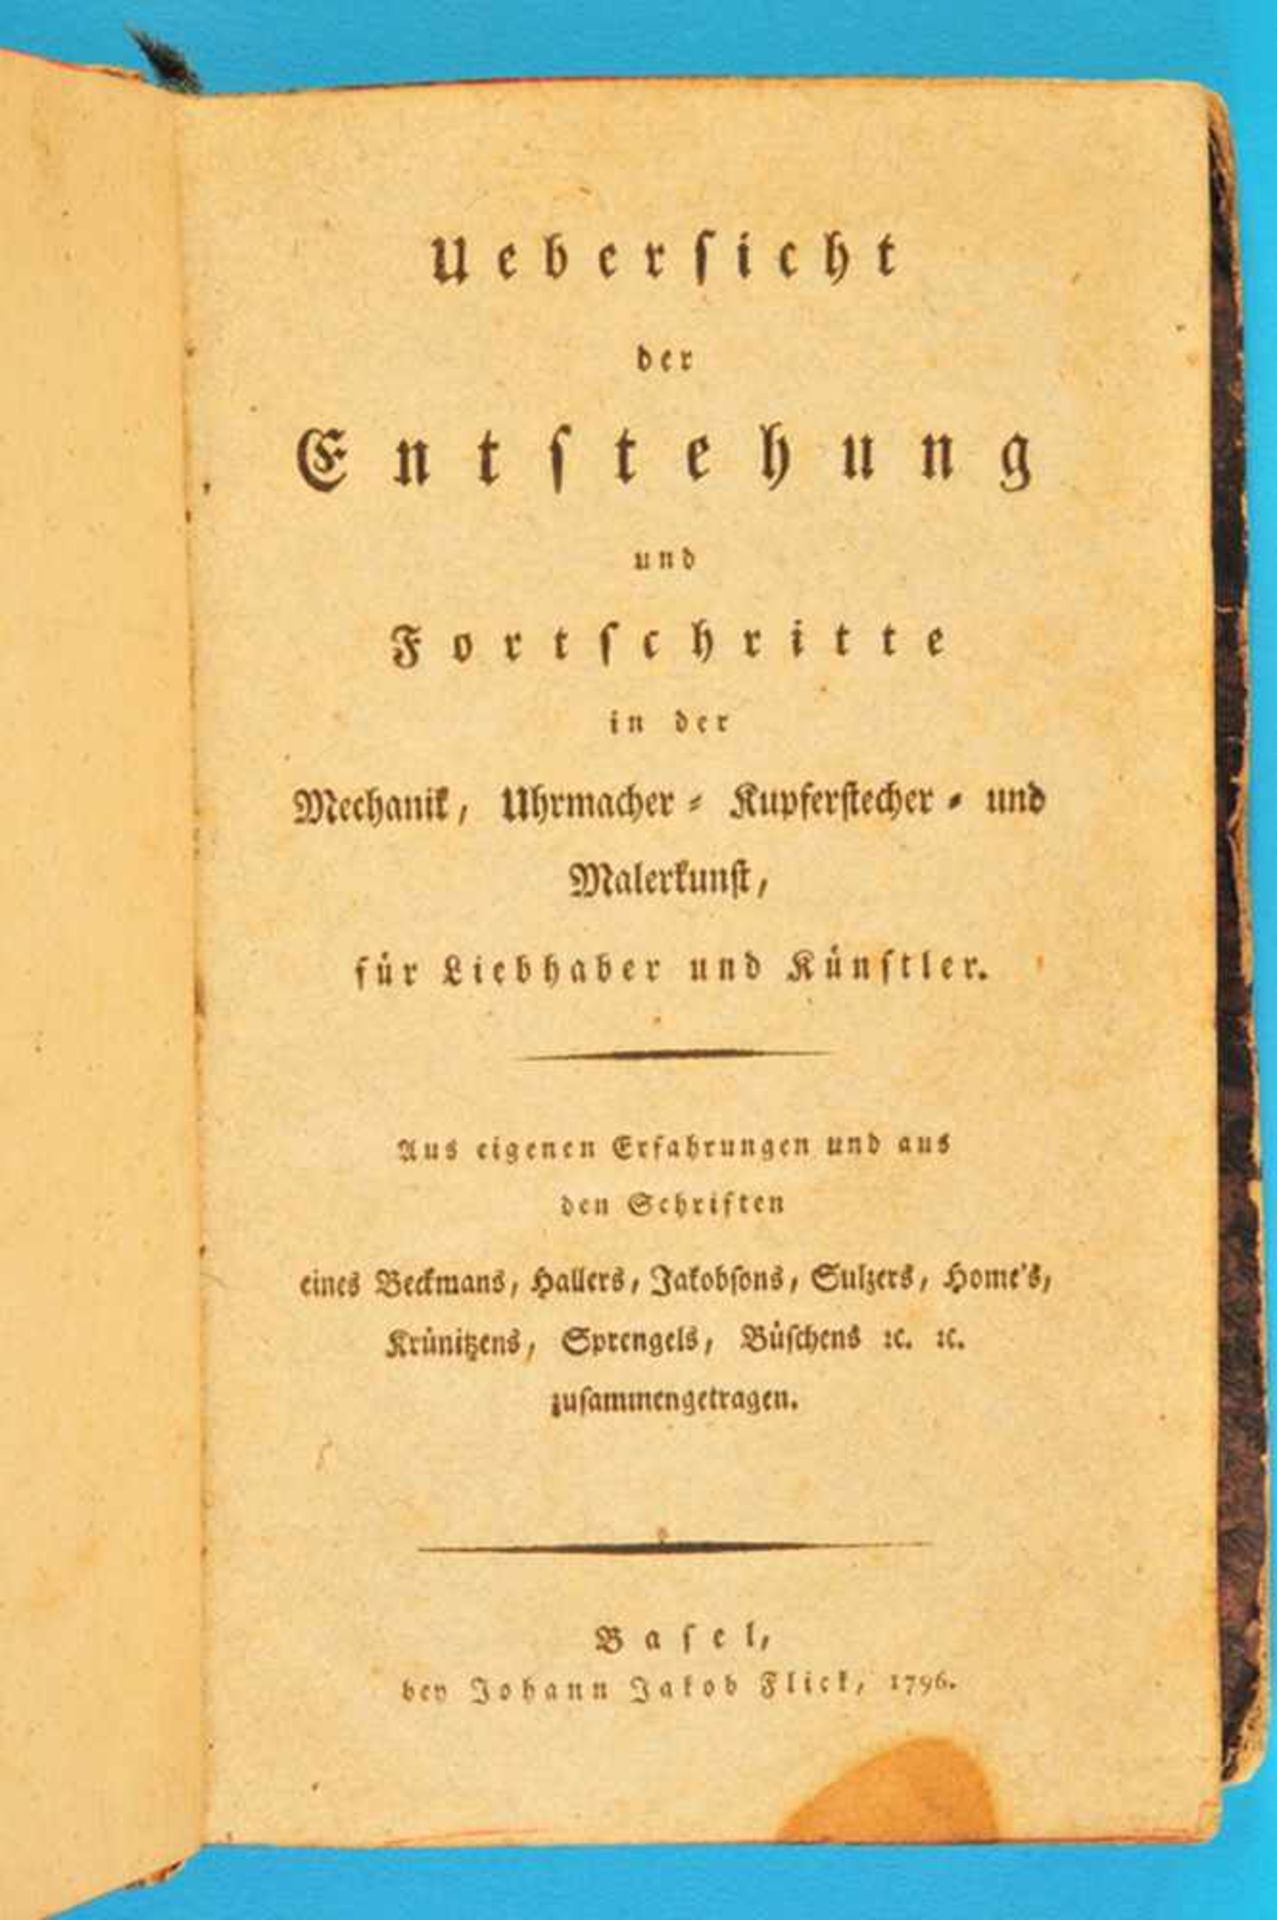 Johann Jakob Flick, Übersicht der Entstehung und Fortschritte in der Mechanik, Uhrmacher-,